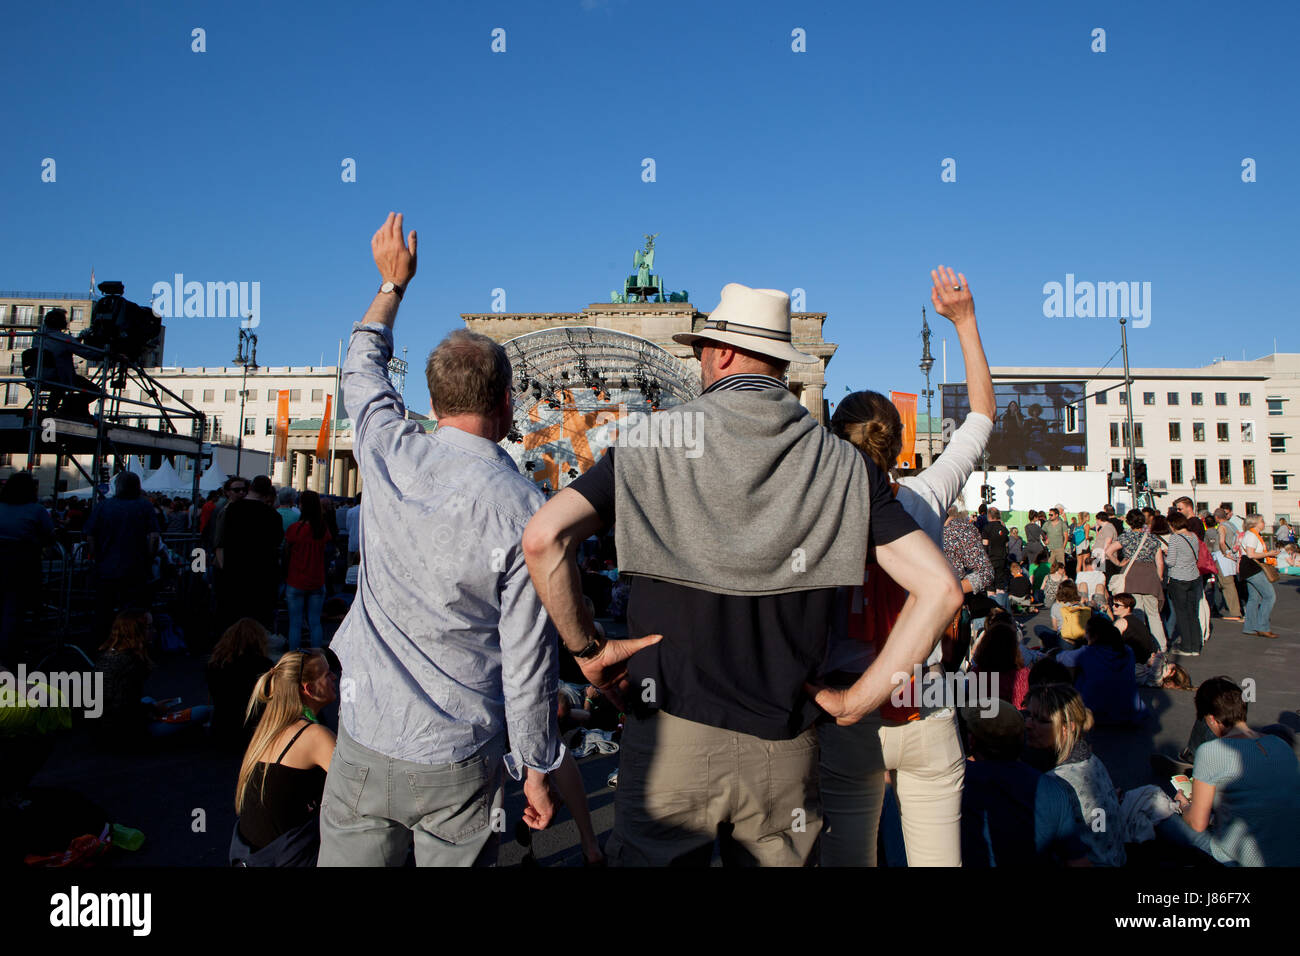 Simon becker / le pictorium - Chiesa evangelica tedesca gruppo (kirchentag) 2017 a Berlino - 26/05/2017 - Germania / Berlino / Berlino - strabe des 17. juni durante il tramonto presso il Kirchentag di Berlino. Foto Stock